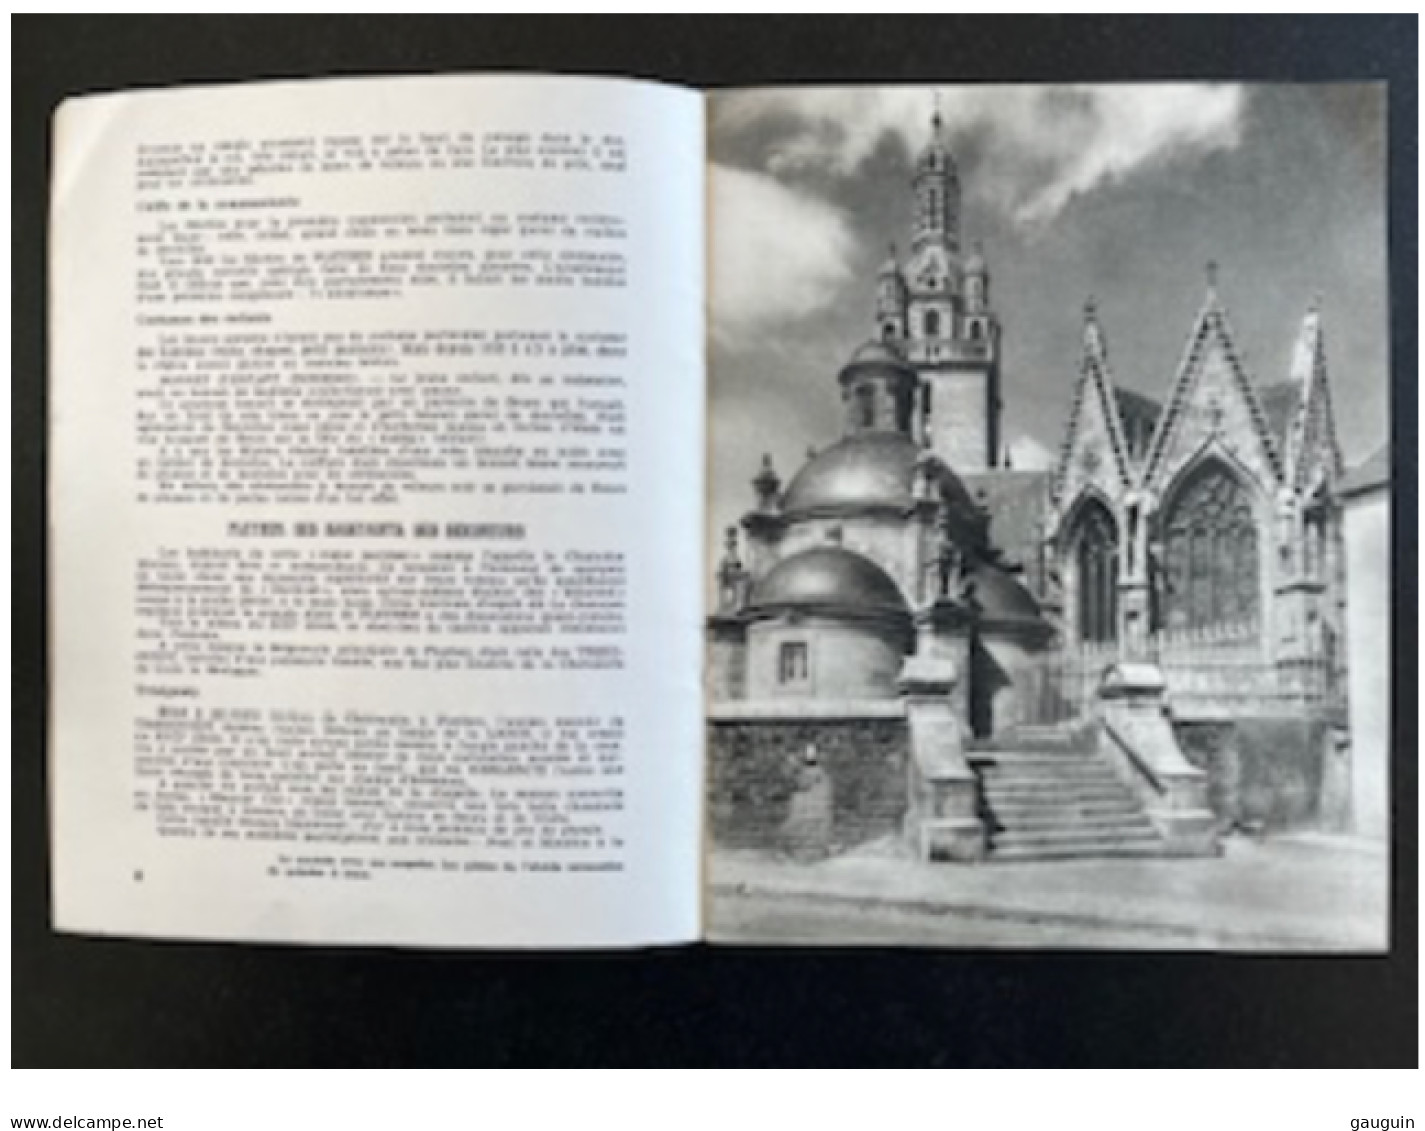 PLEYBEN - Monographie Texte Madeleine MOREAU-PELLEN / Photos Jos Le DOARE - 1957 - 32 Pages (Nbreuses Photos) - Bretagne